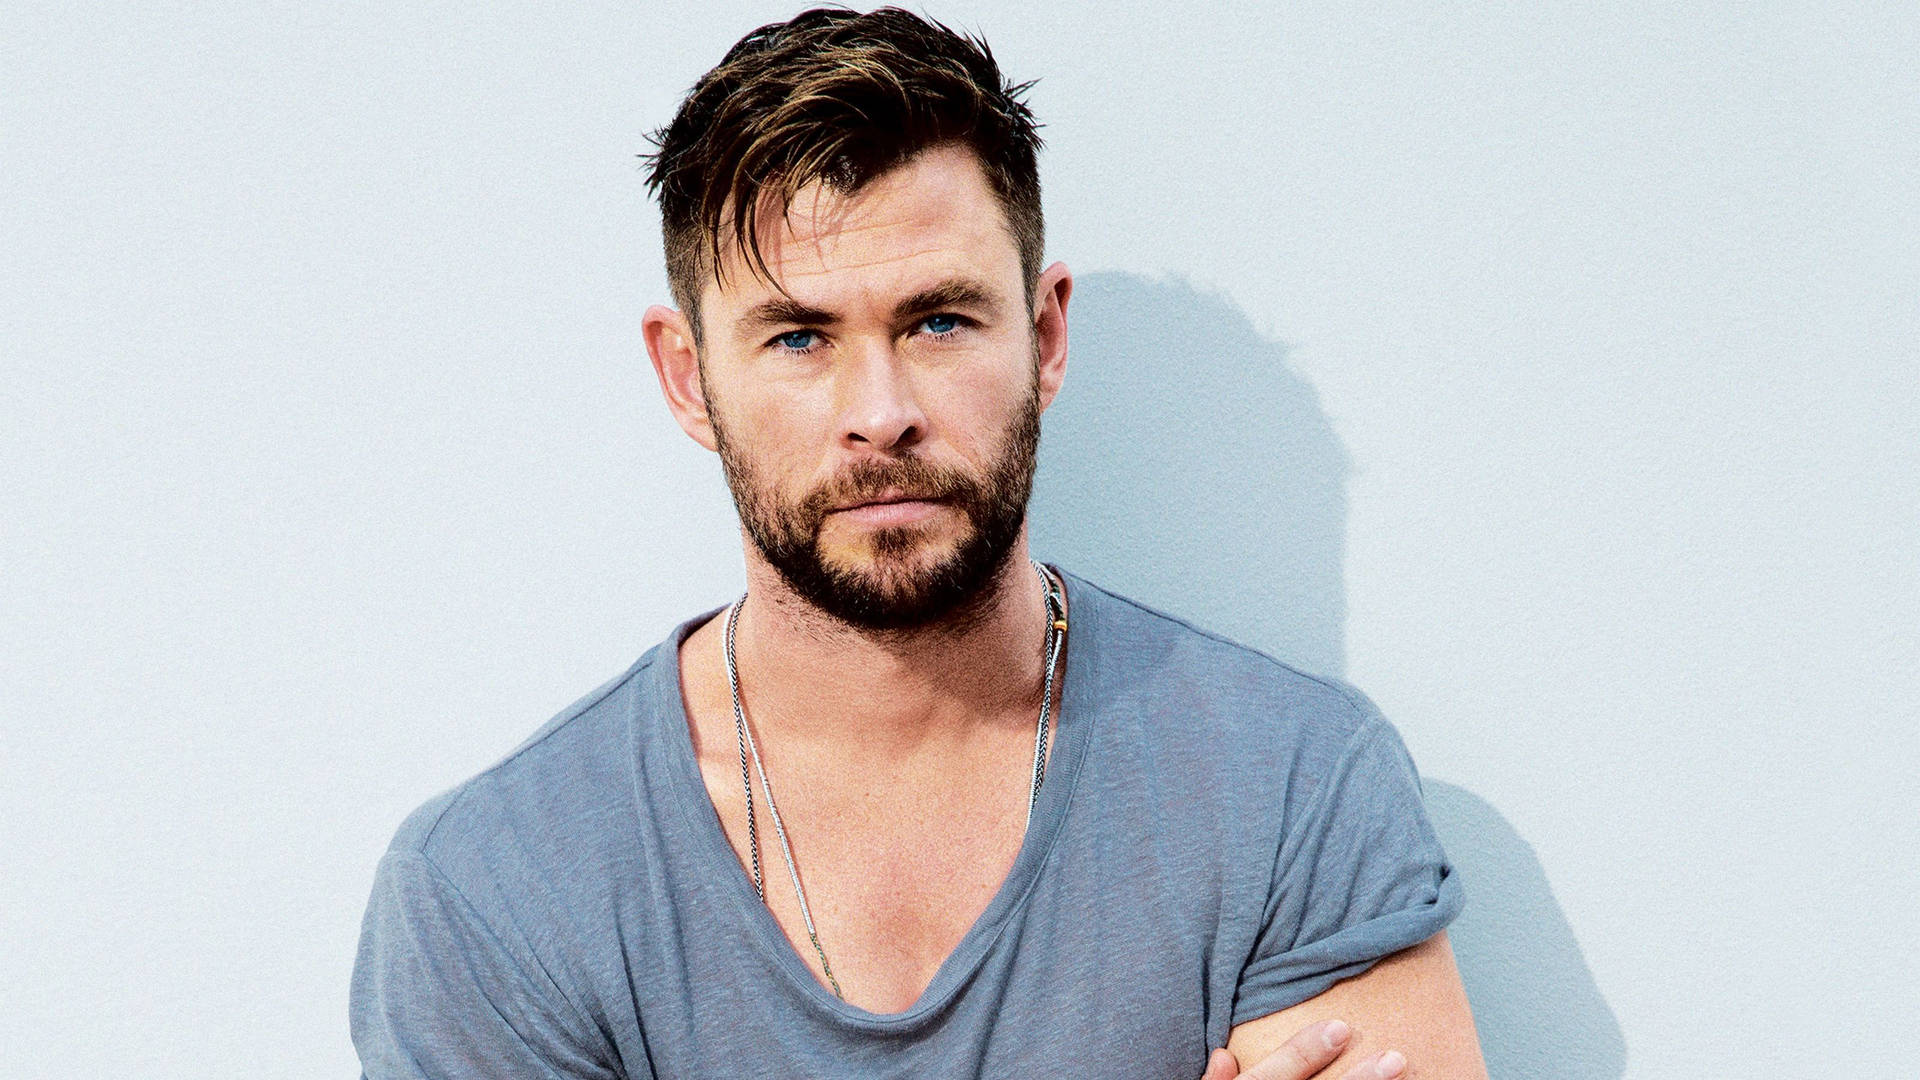 Download Handsome Portrait Of Chris Hemsworth Wallpaper 